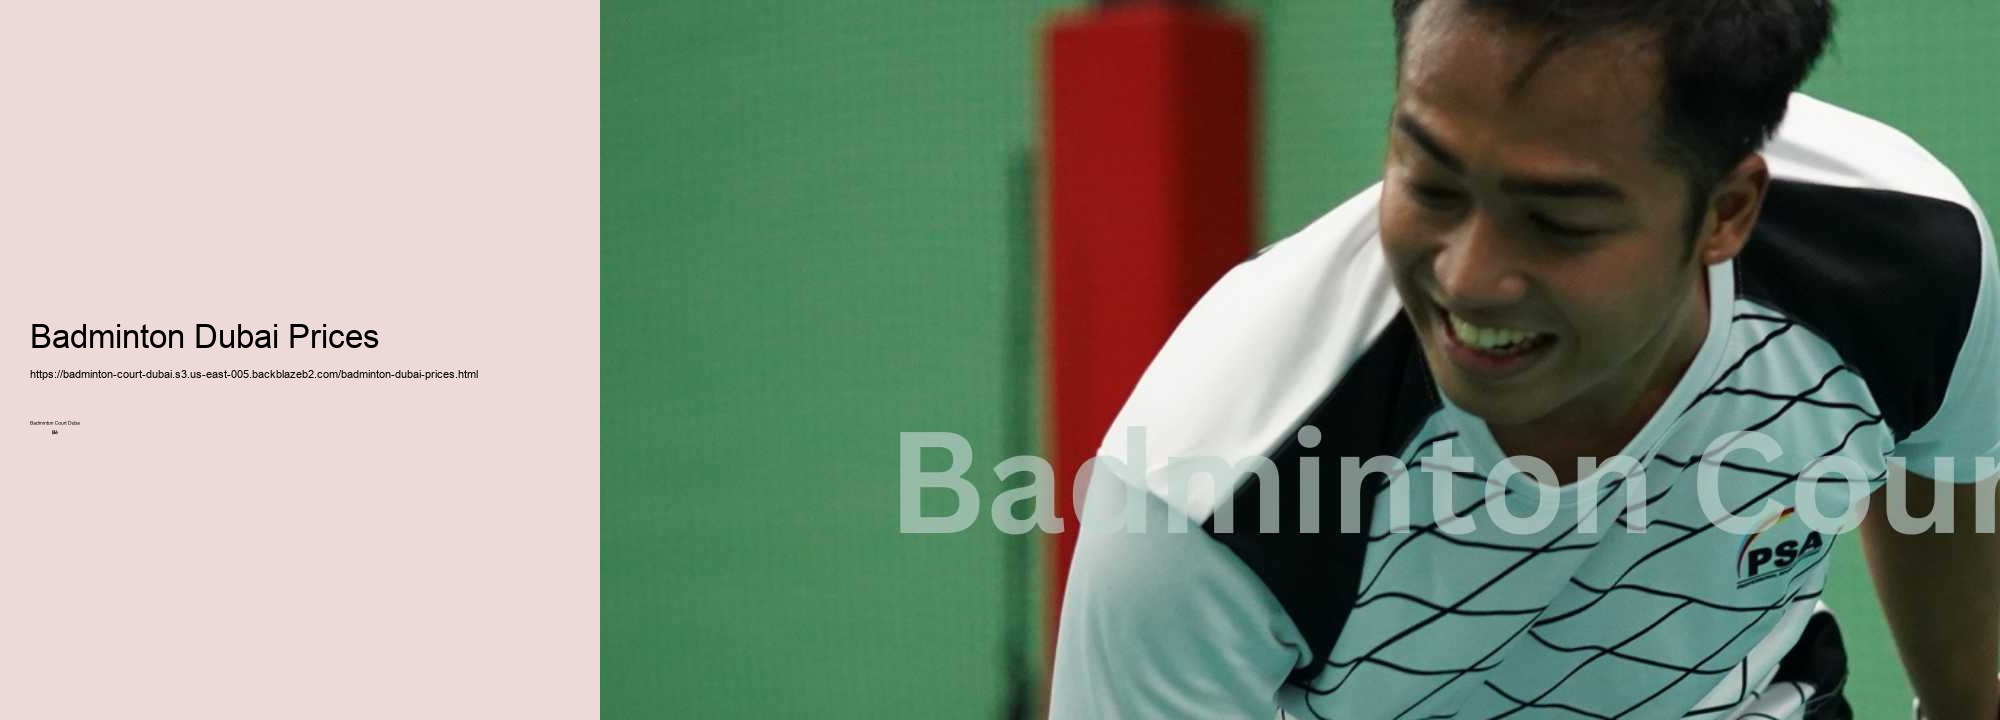 Badminton Dubai Prices